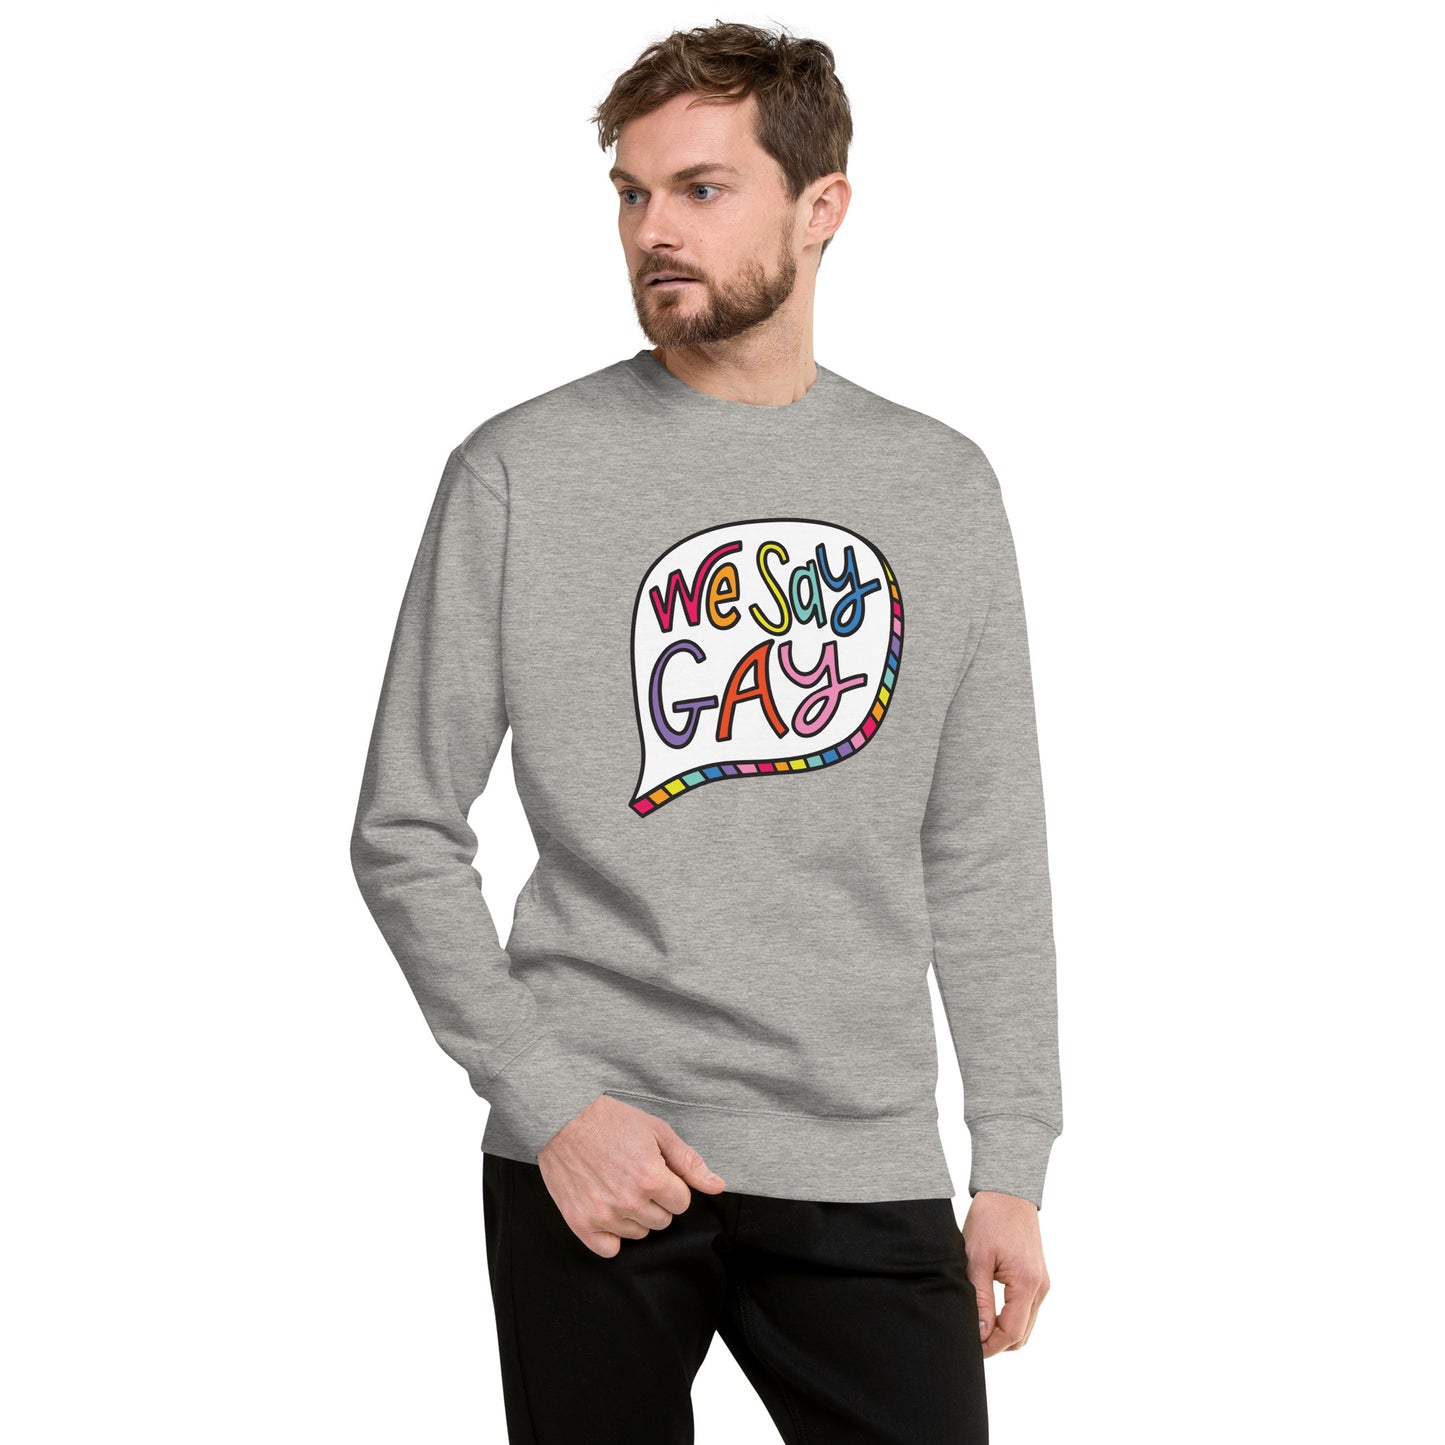 We Say Gay - Sweatshirt